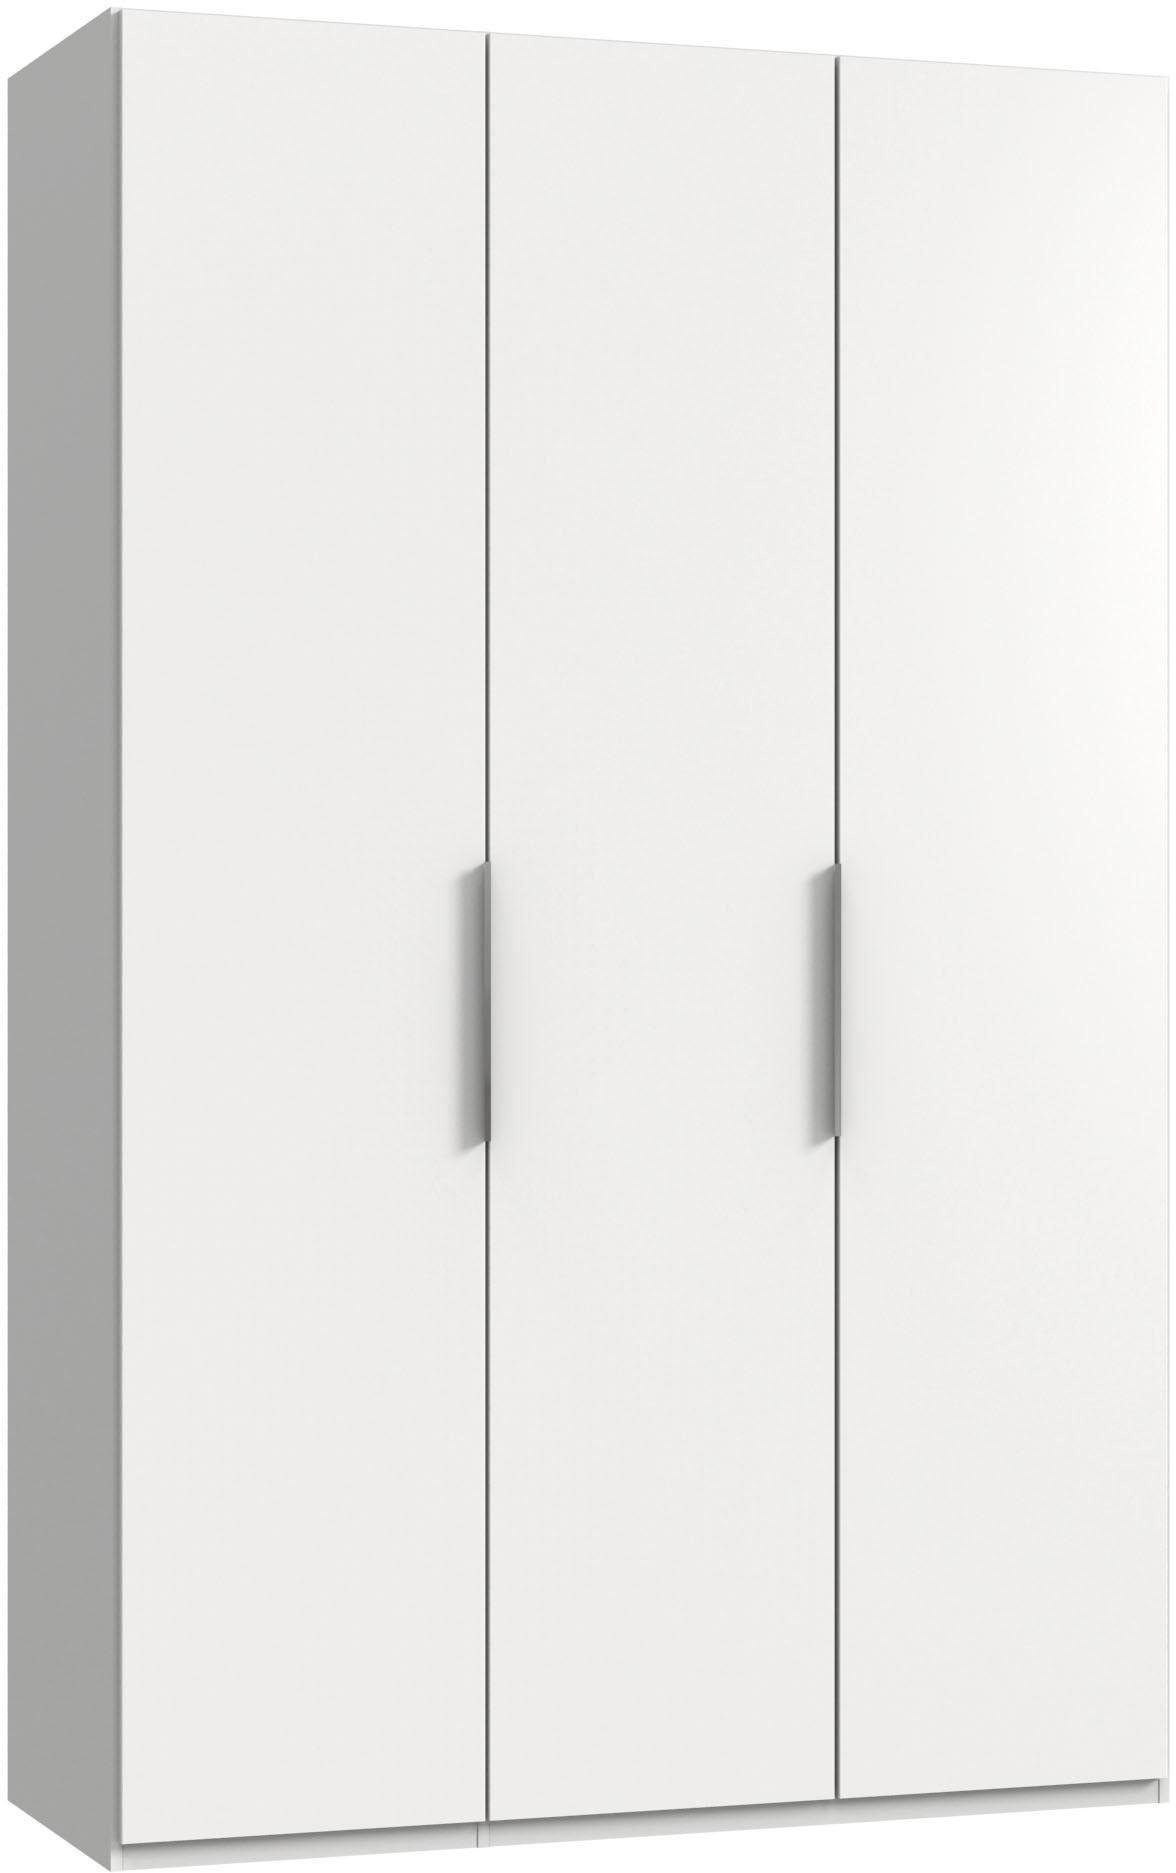 150x58x236cm 3-türig Wimex Level Kleiderschrank (Level, Kleiderschrank) weiß